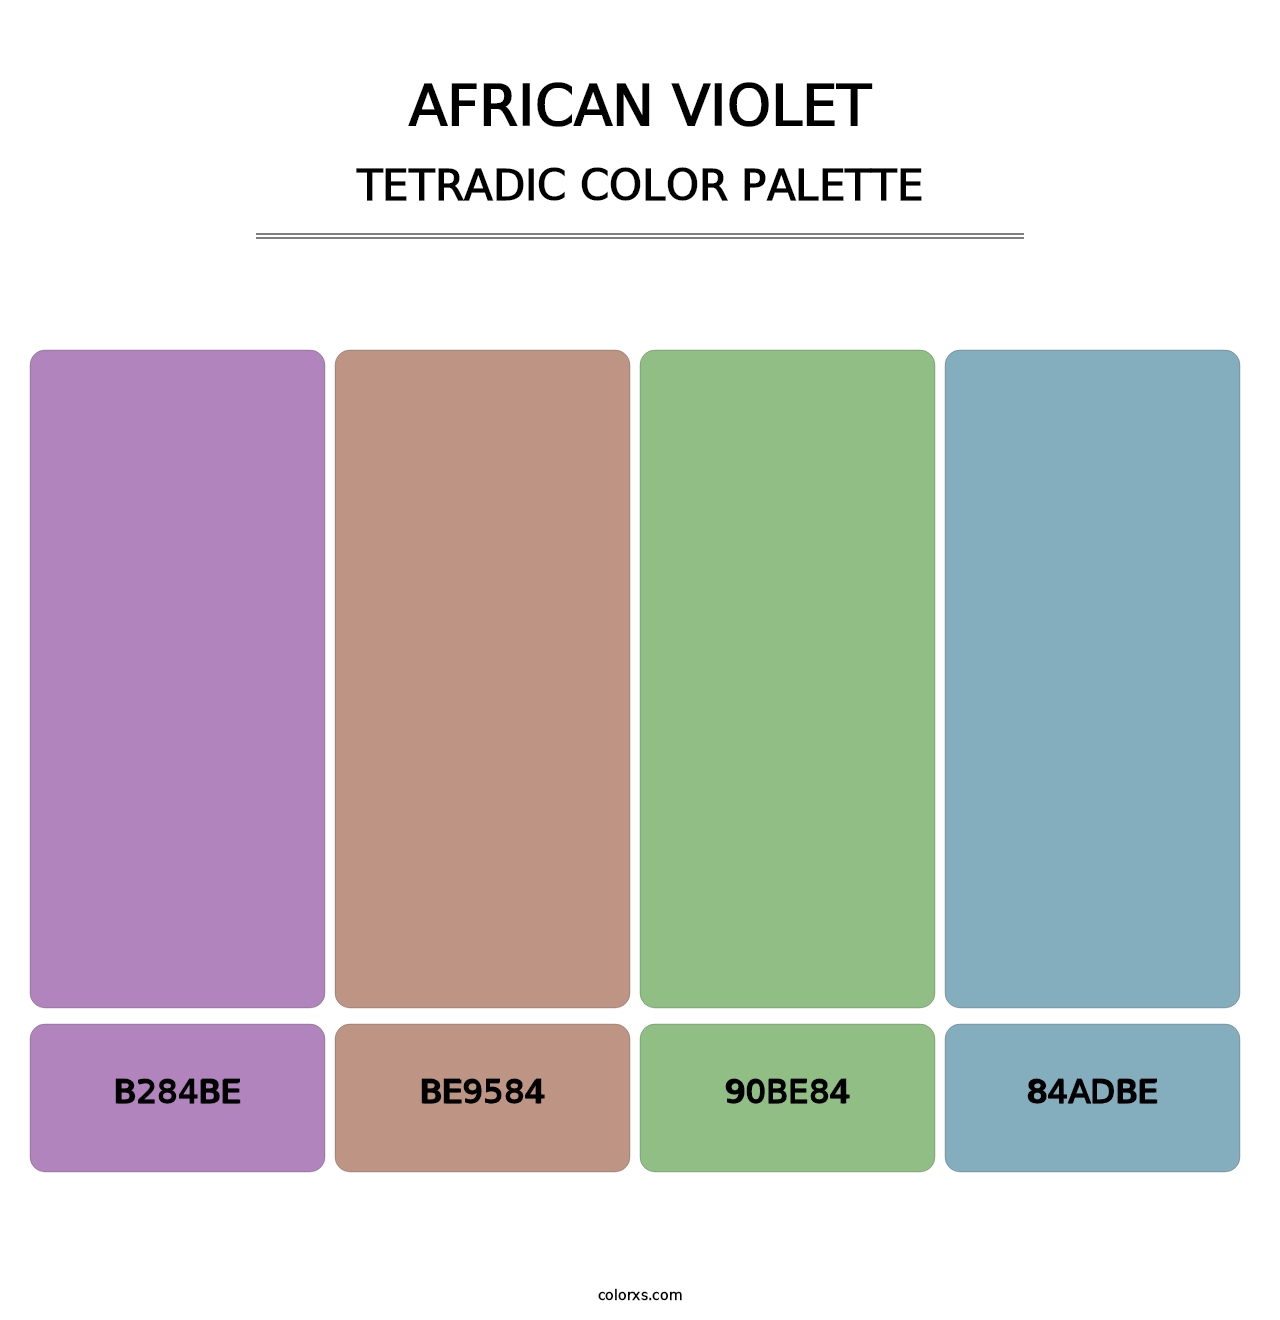 African Violet - Tetradic Color Palette